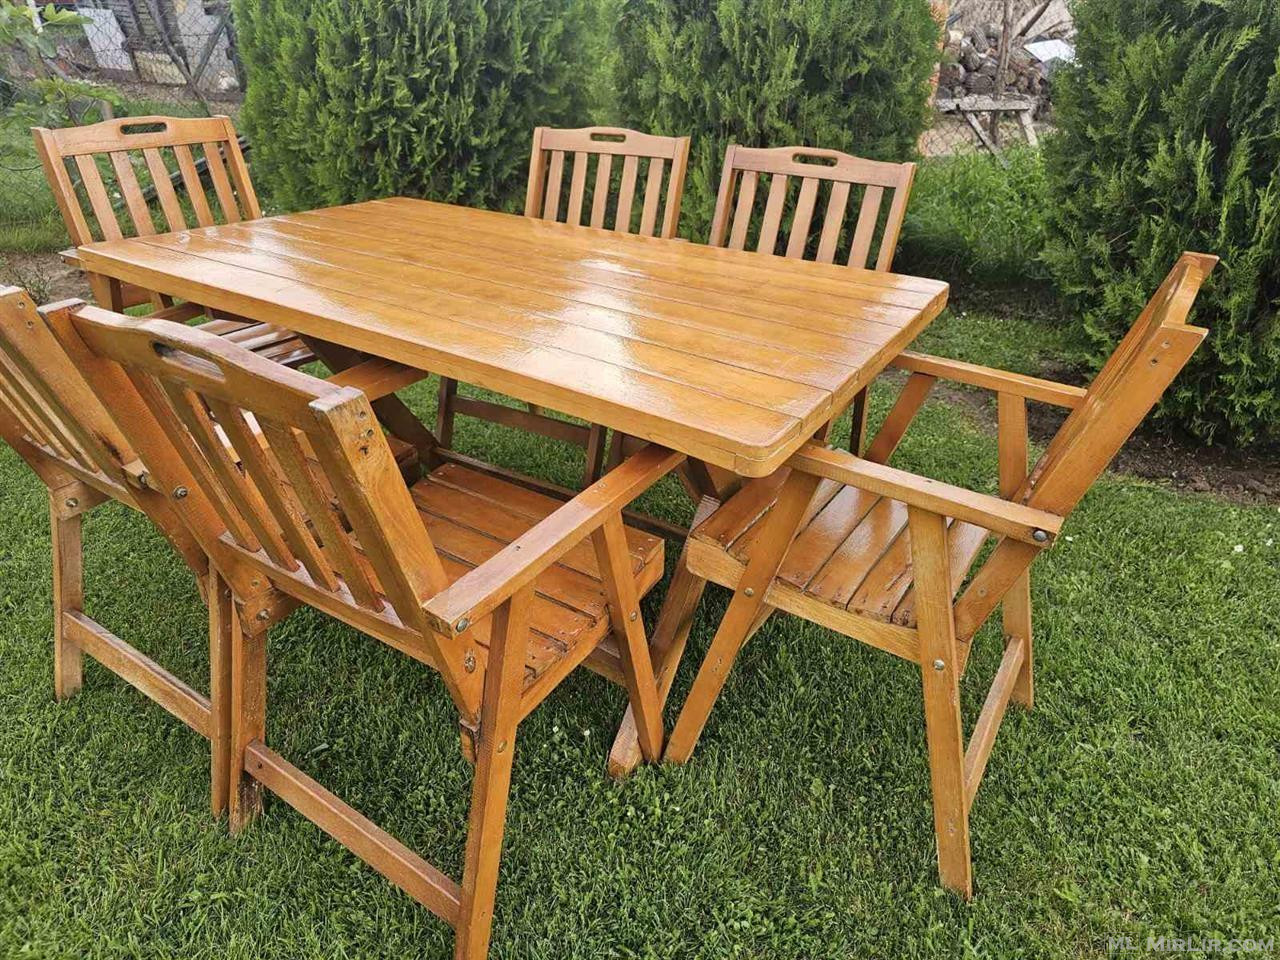 Tavolinë me 6 karrige